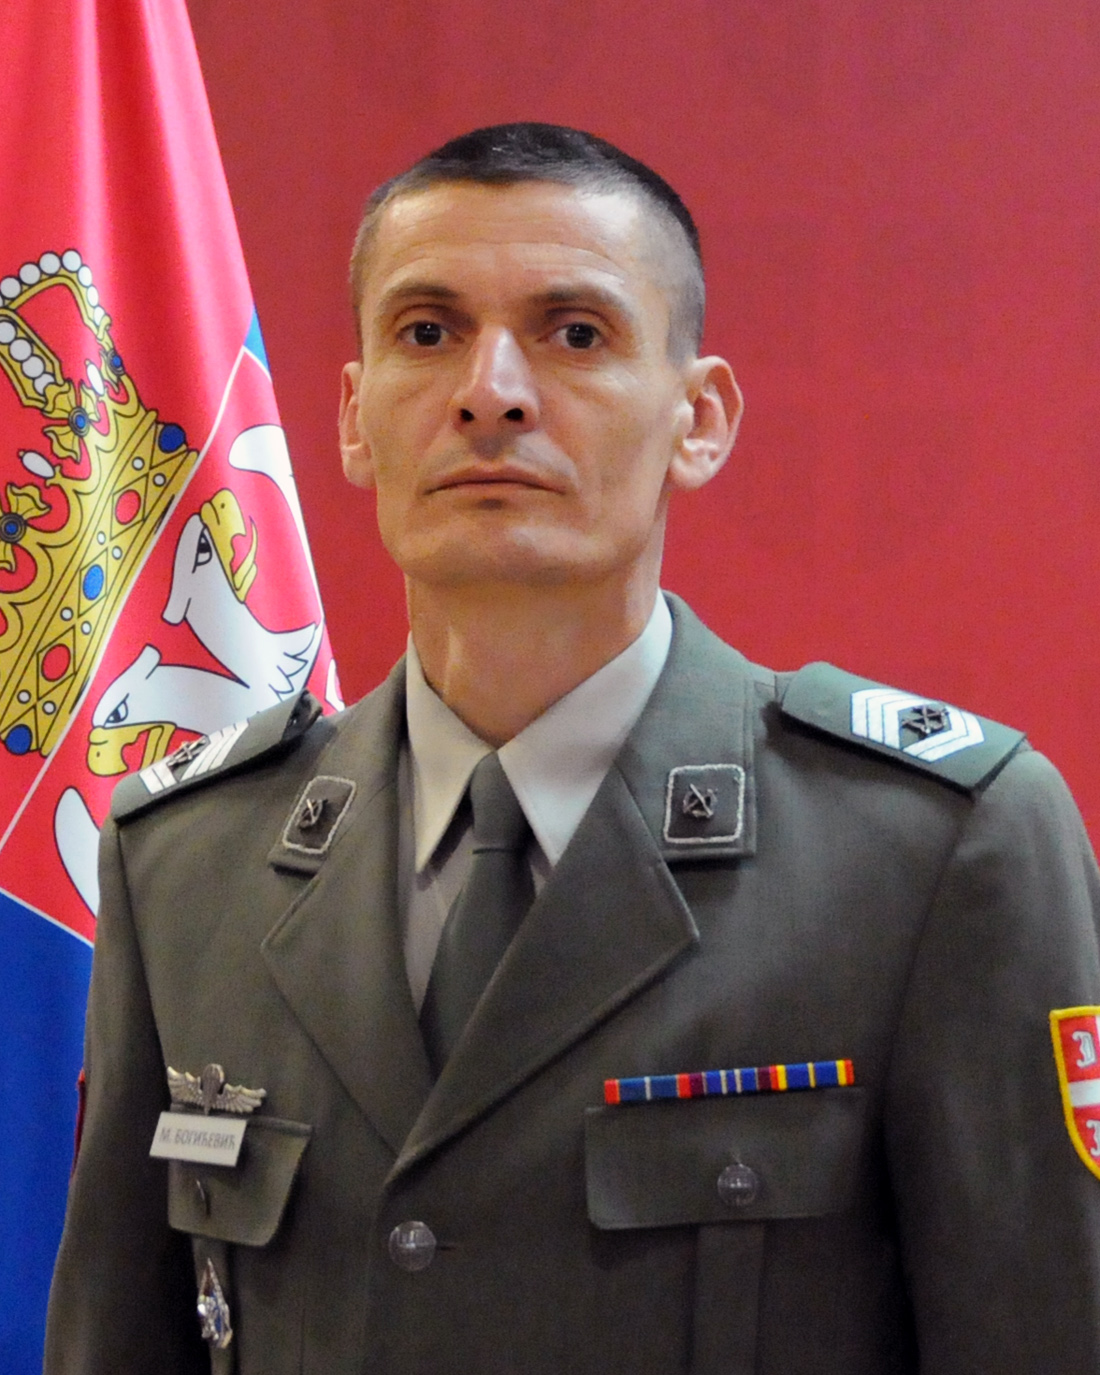 Sergeant Major Mihailo Bogićević